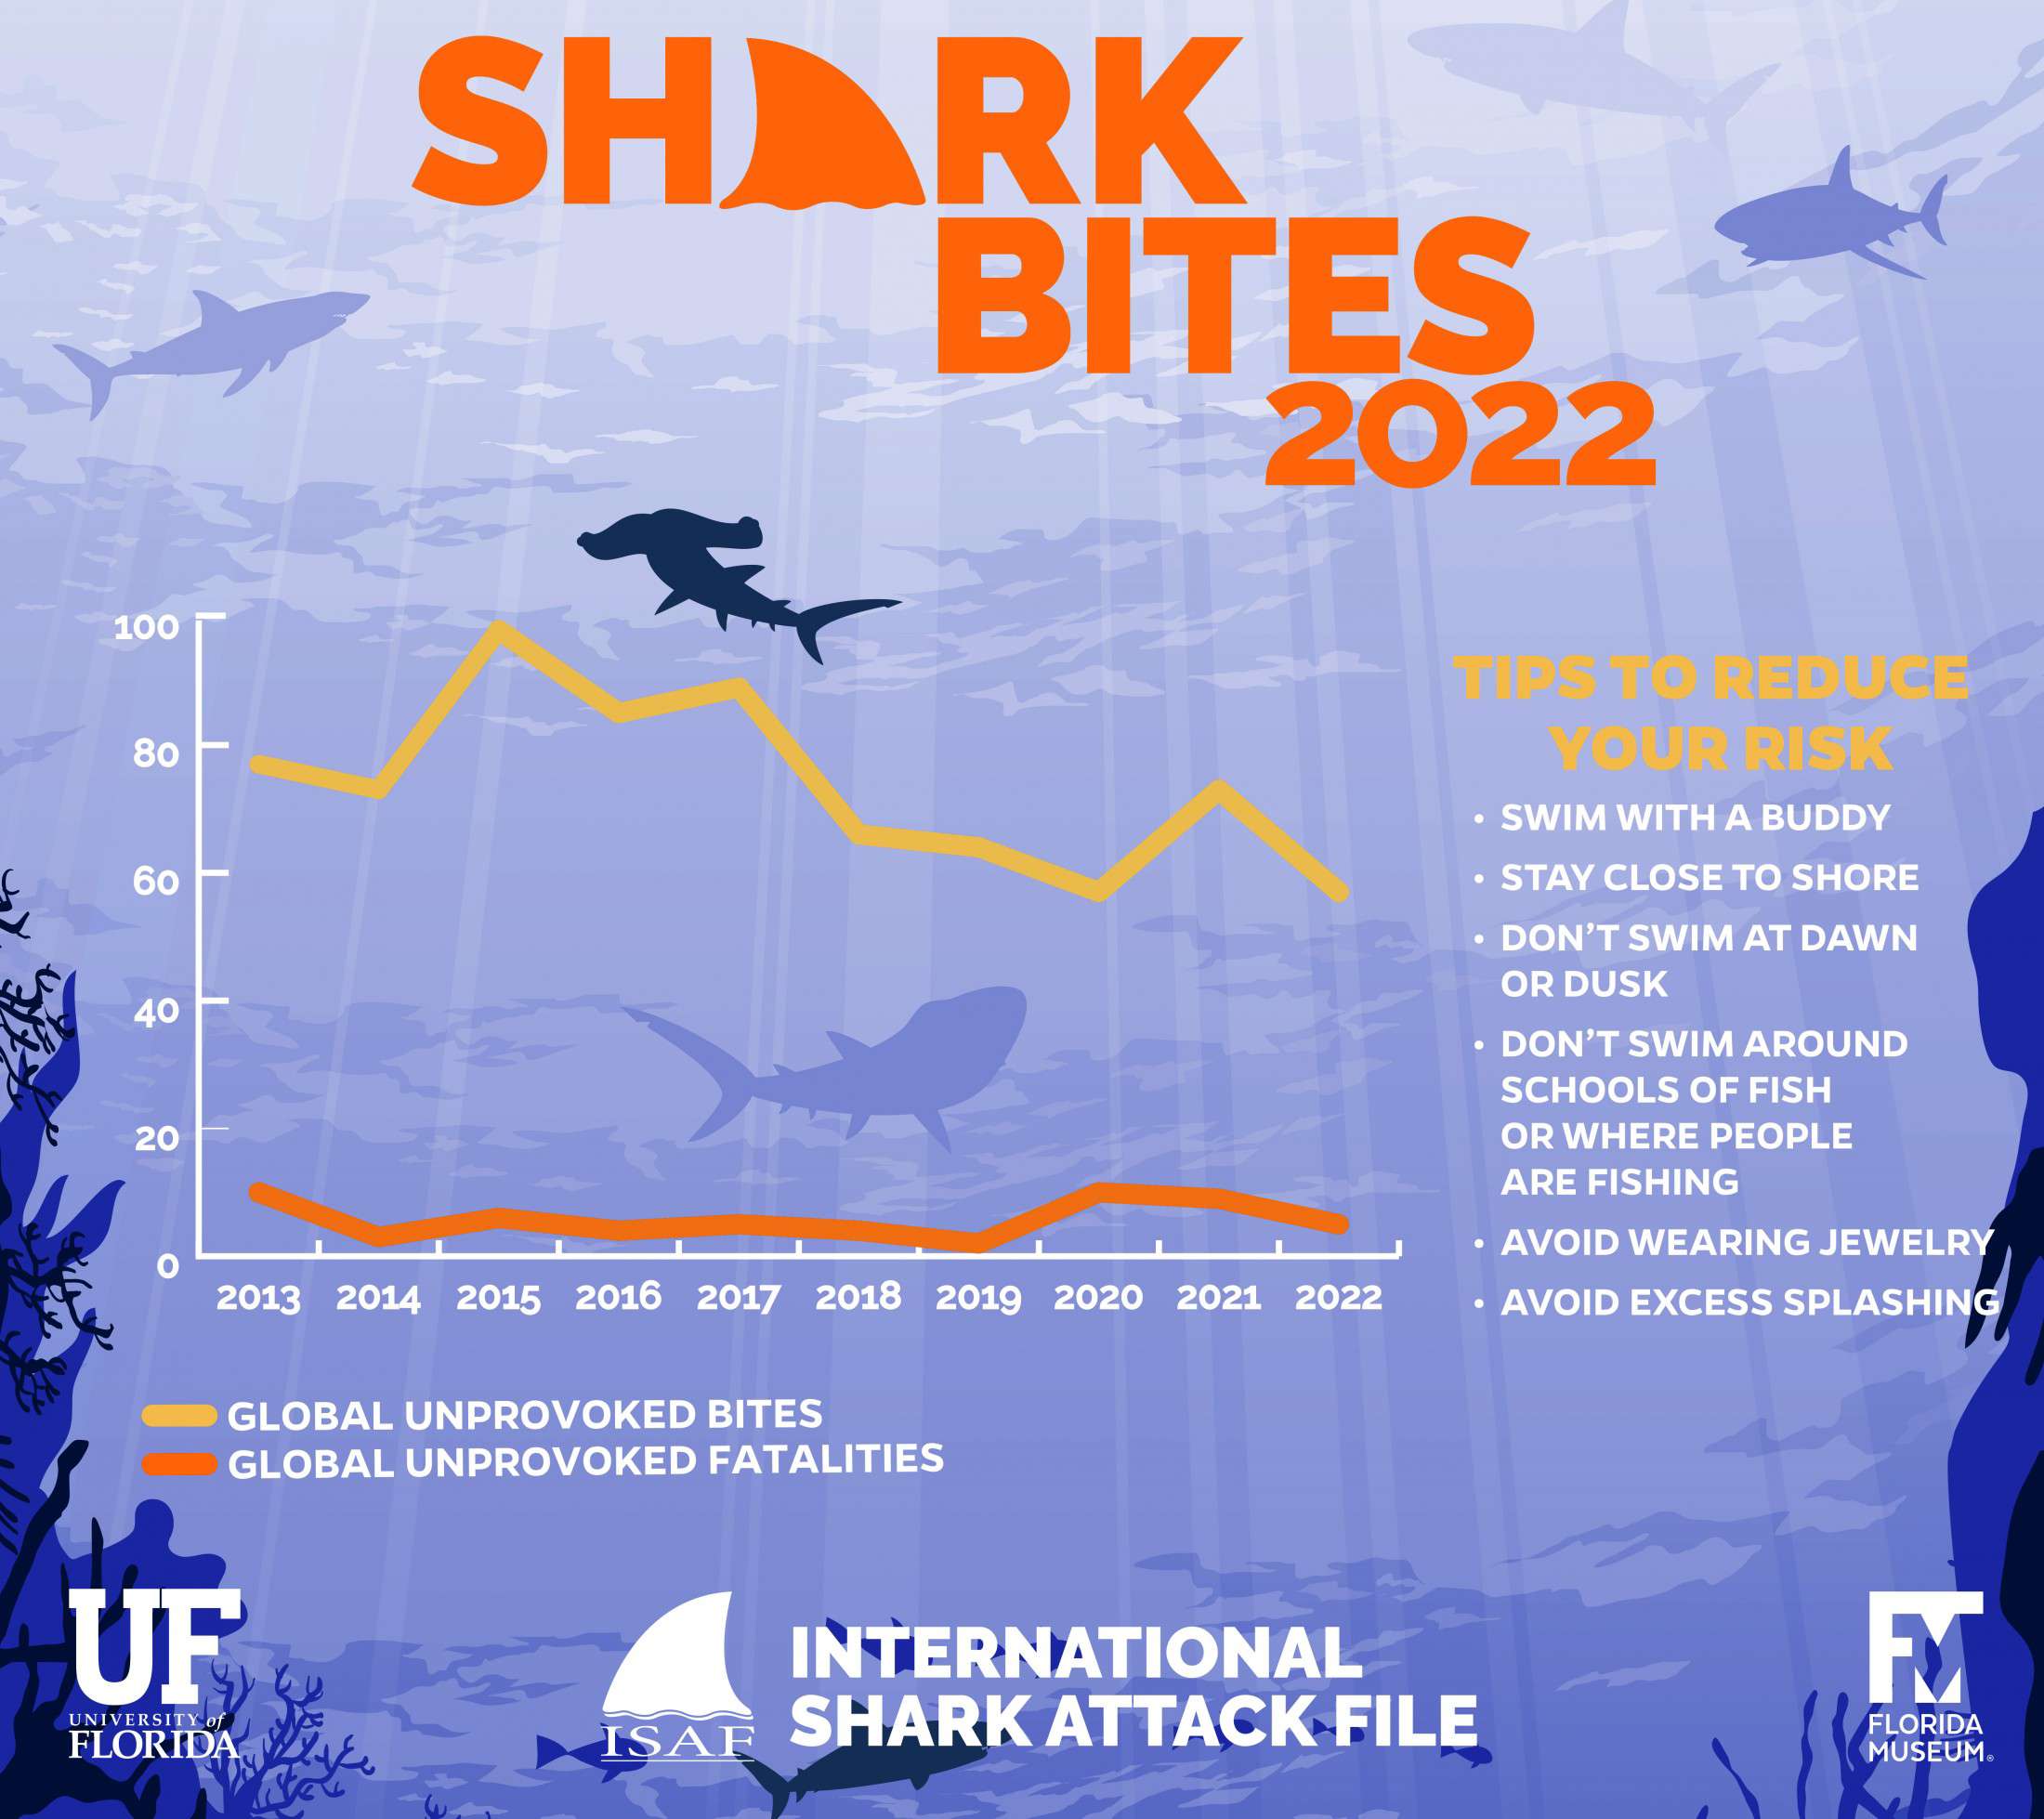 Μετά από μια σύντομη αύξηση το 2021, ο αριθμός των απρόκλητων δαγκωμάτων από καρχαρίες μειώθηκε και πάλι το 2022, γεγονός που ενδεχομένως αντανακλά την παγκόσμια μείωση του πληθυσμού των καρχαριών (Πηγή: JANE DOMINGUEZ/UNIVERSITY OF FLORIDA)